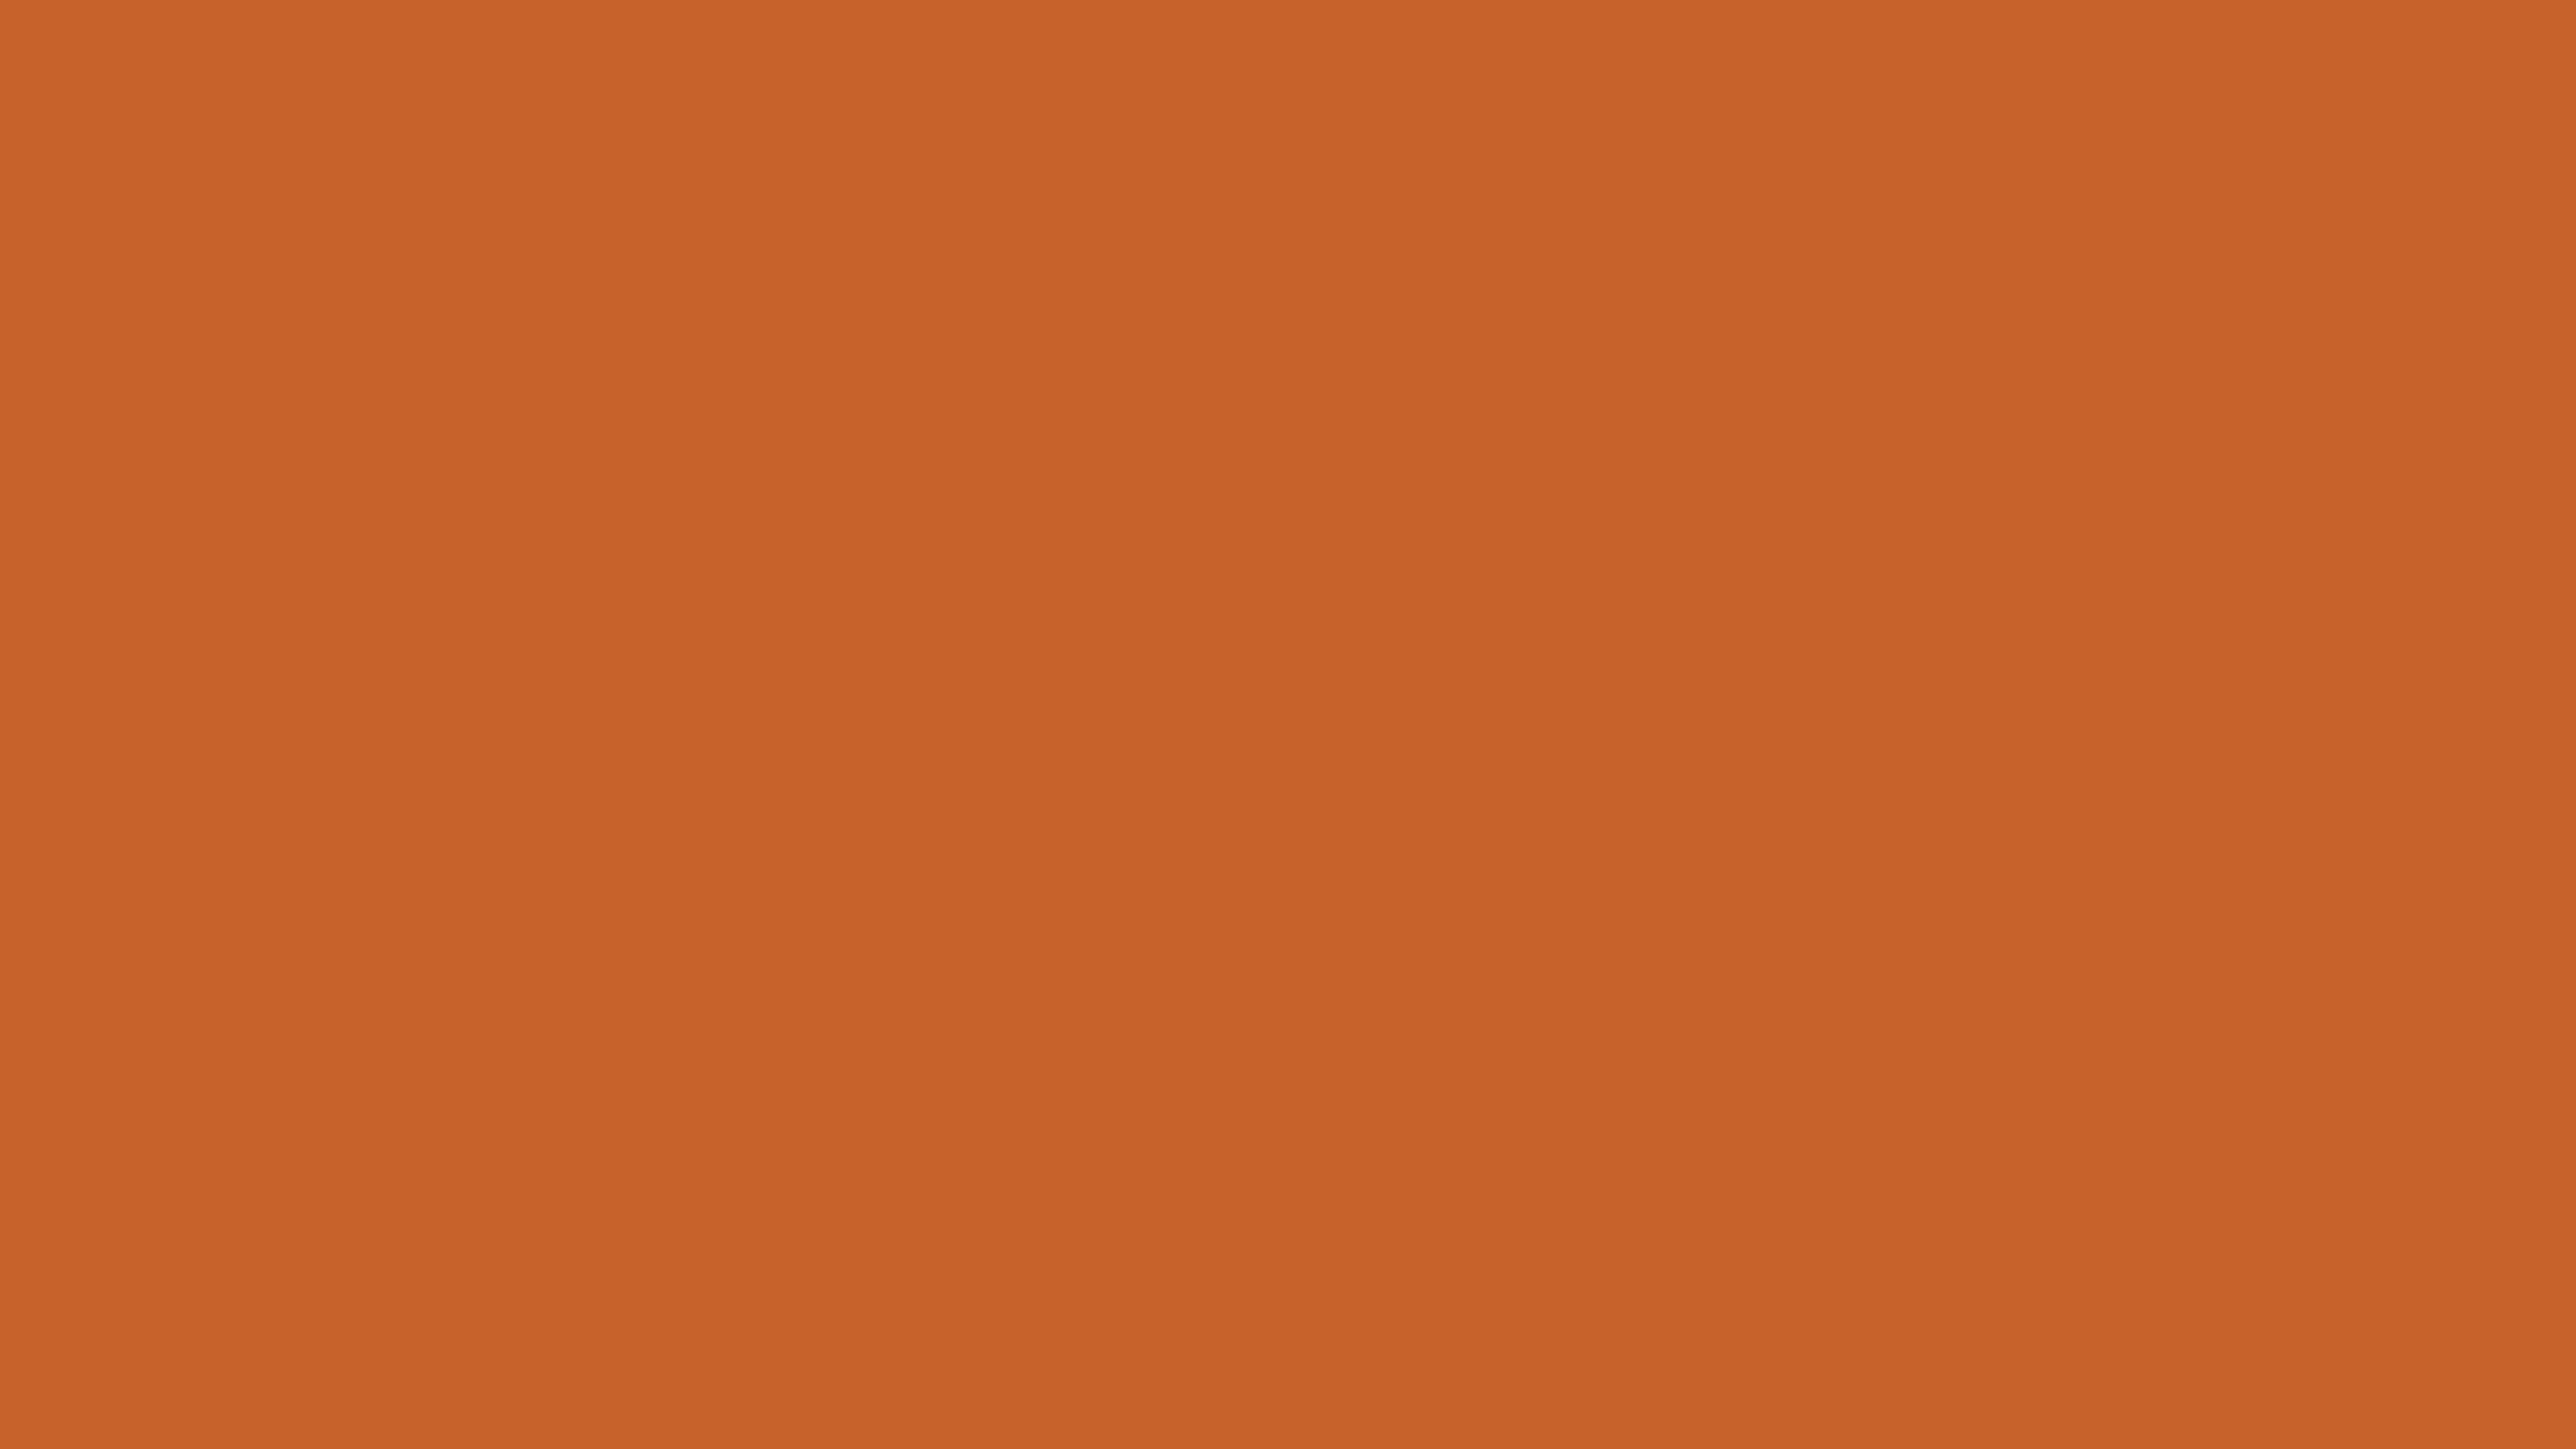 Dark Burnt Orange #b03608 color hex codes and harmonies - Paprika